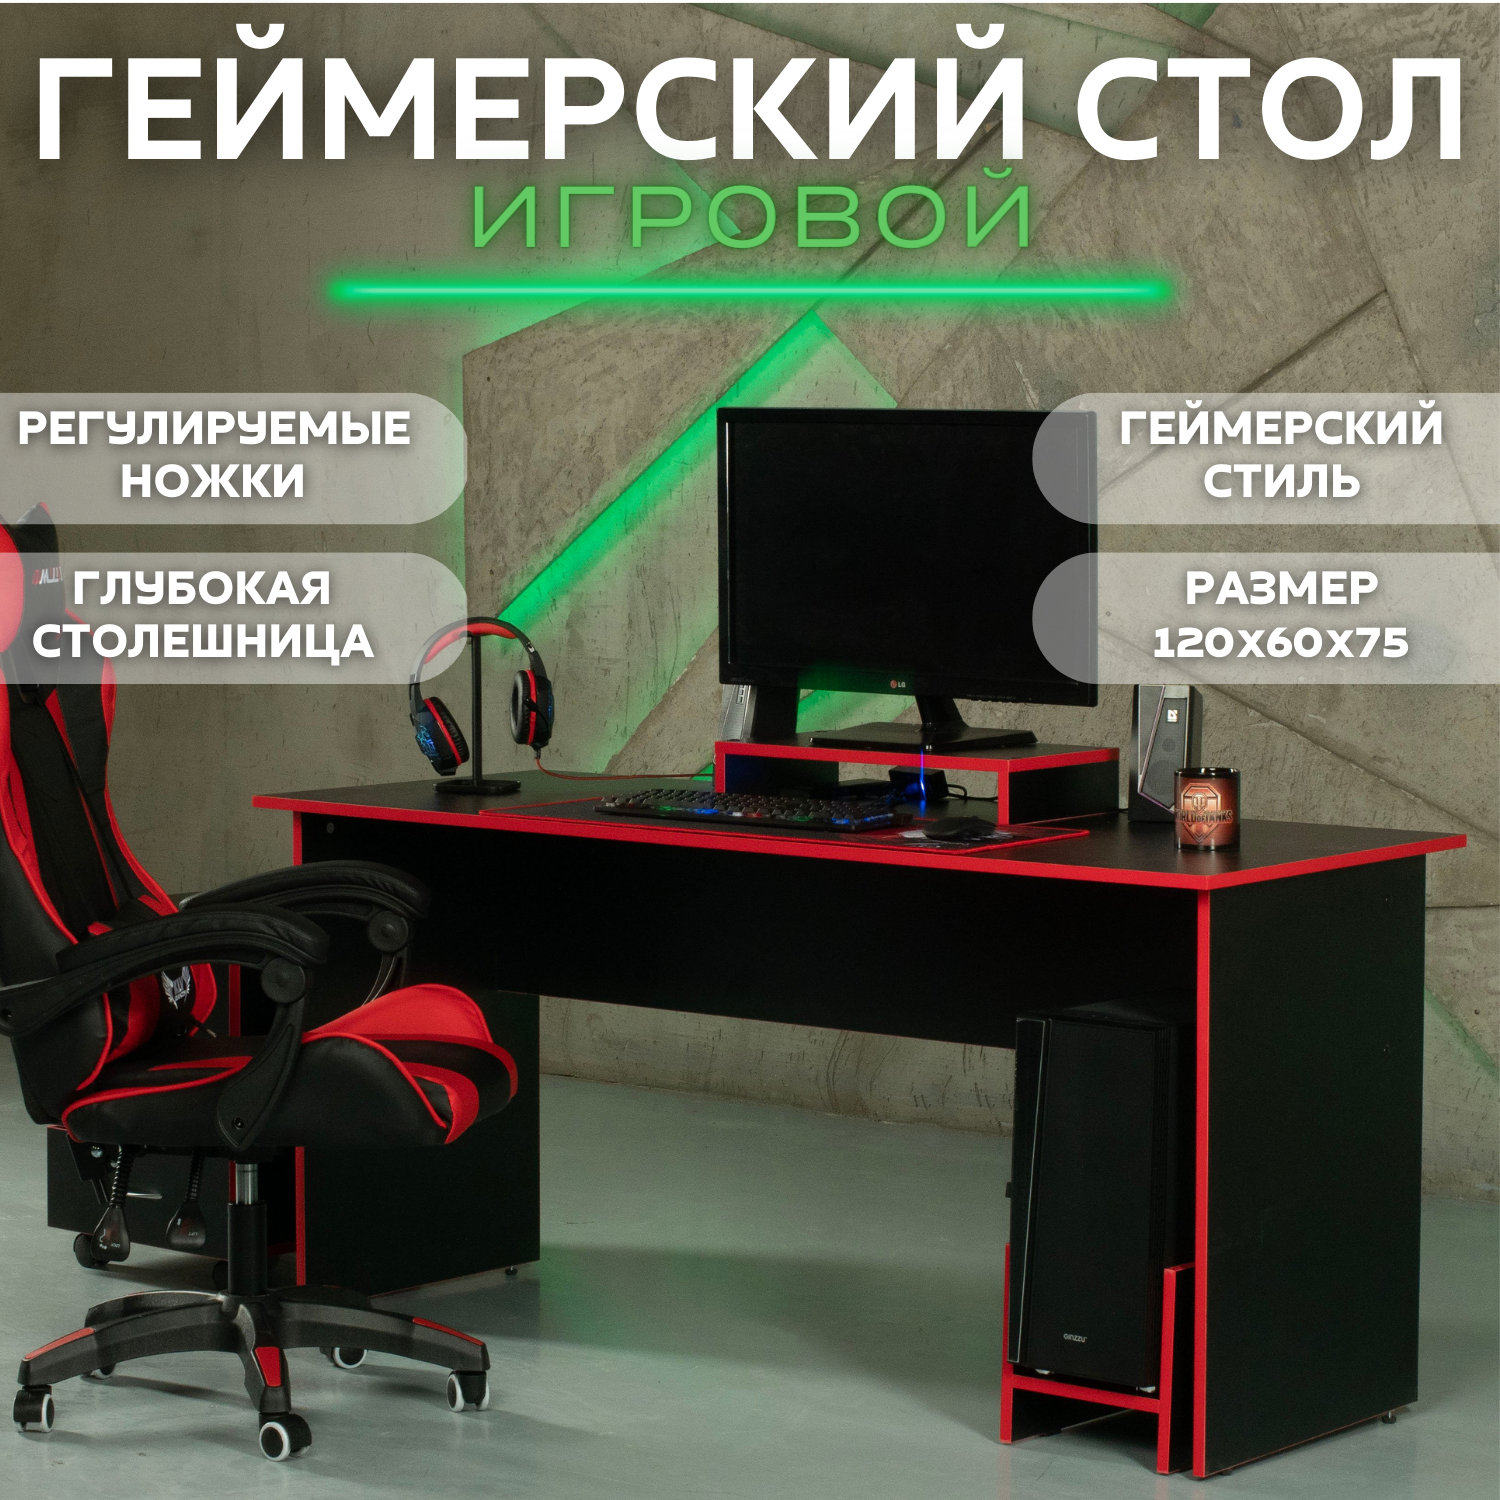 Стол игровой геймерский стол компьютерный офисный письменный, черный красный 120х60х75